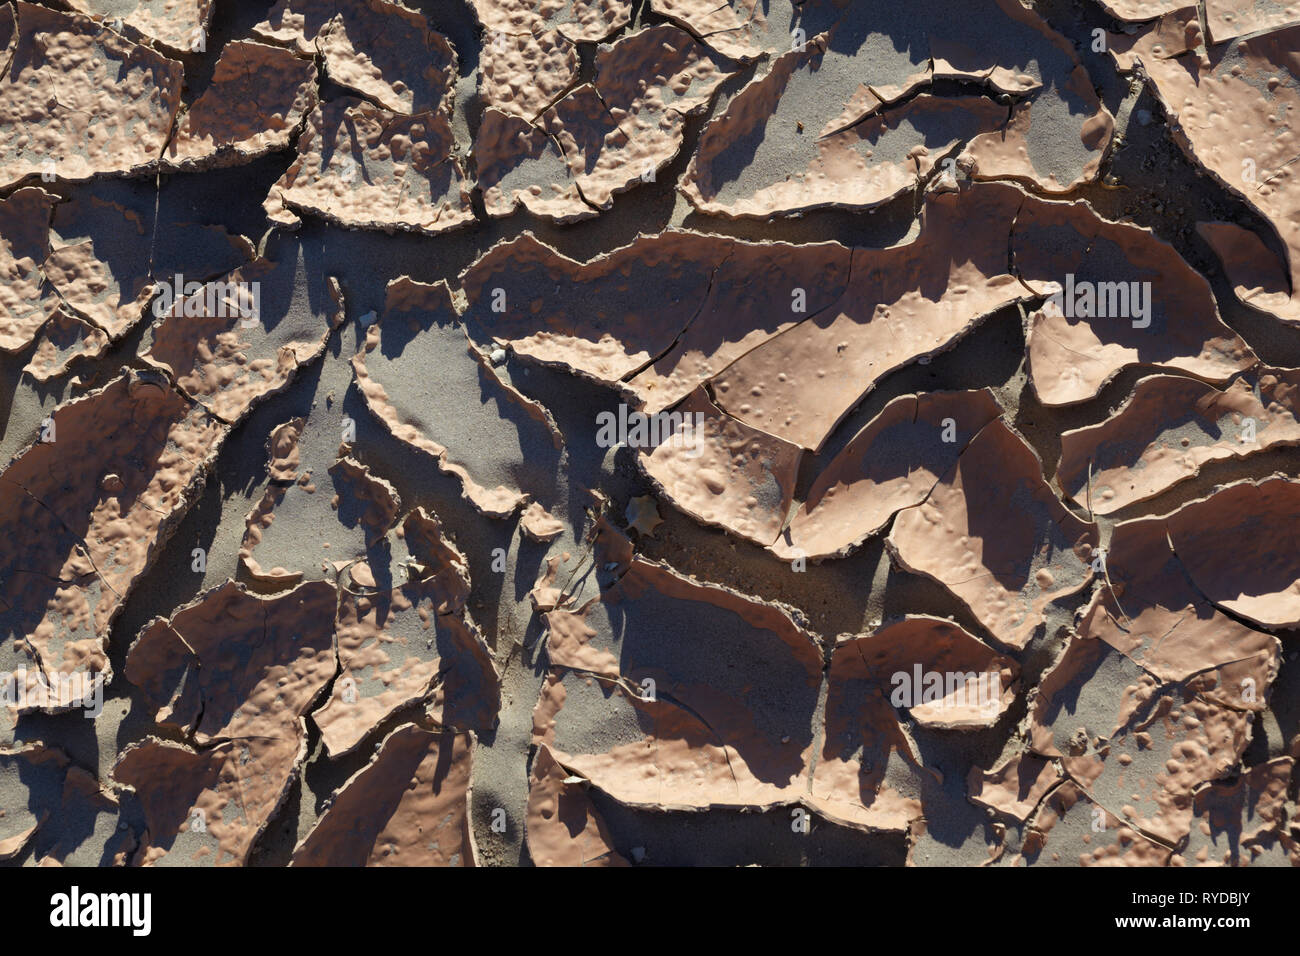 La boue séchée, la Death Valley, Californie, USA. Banque D'Images